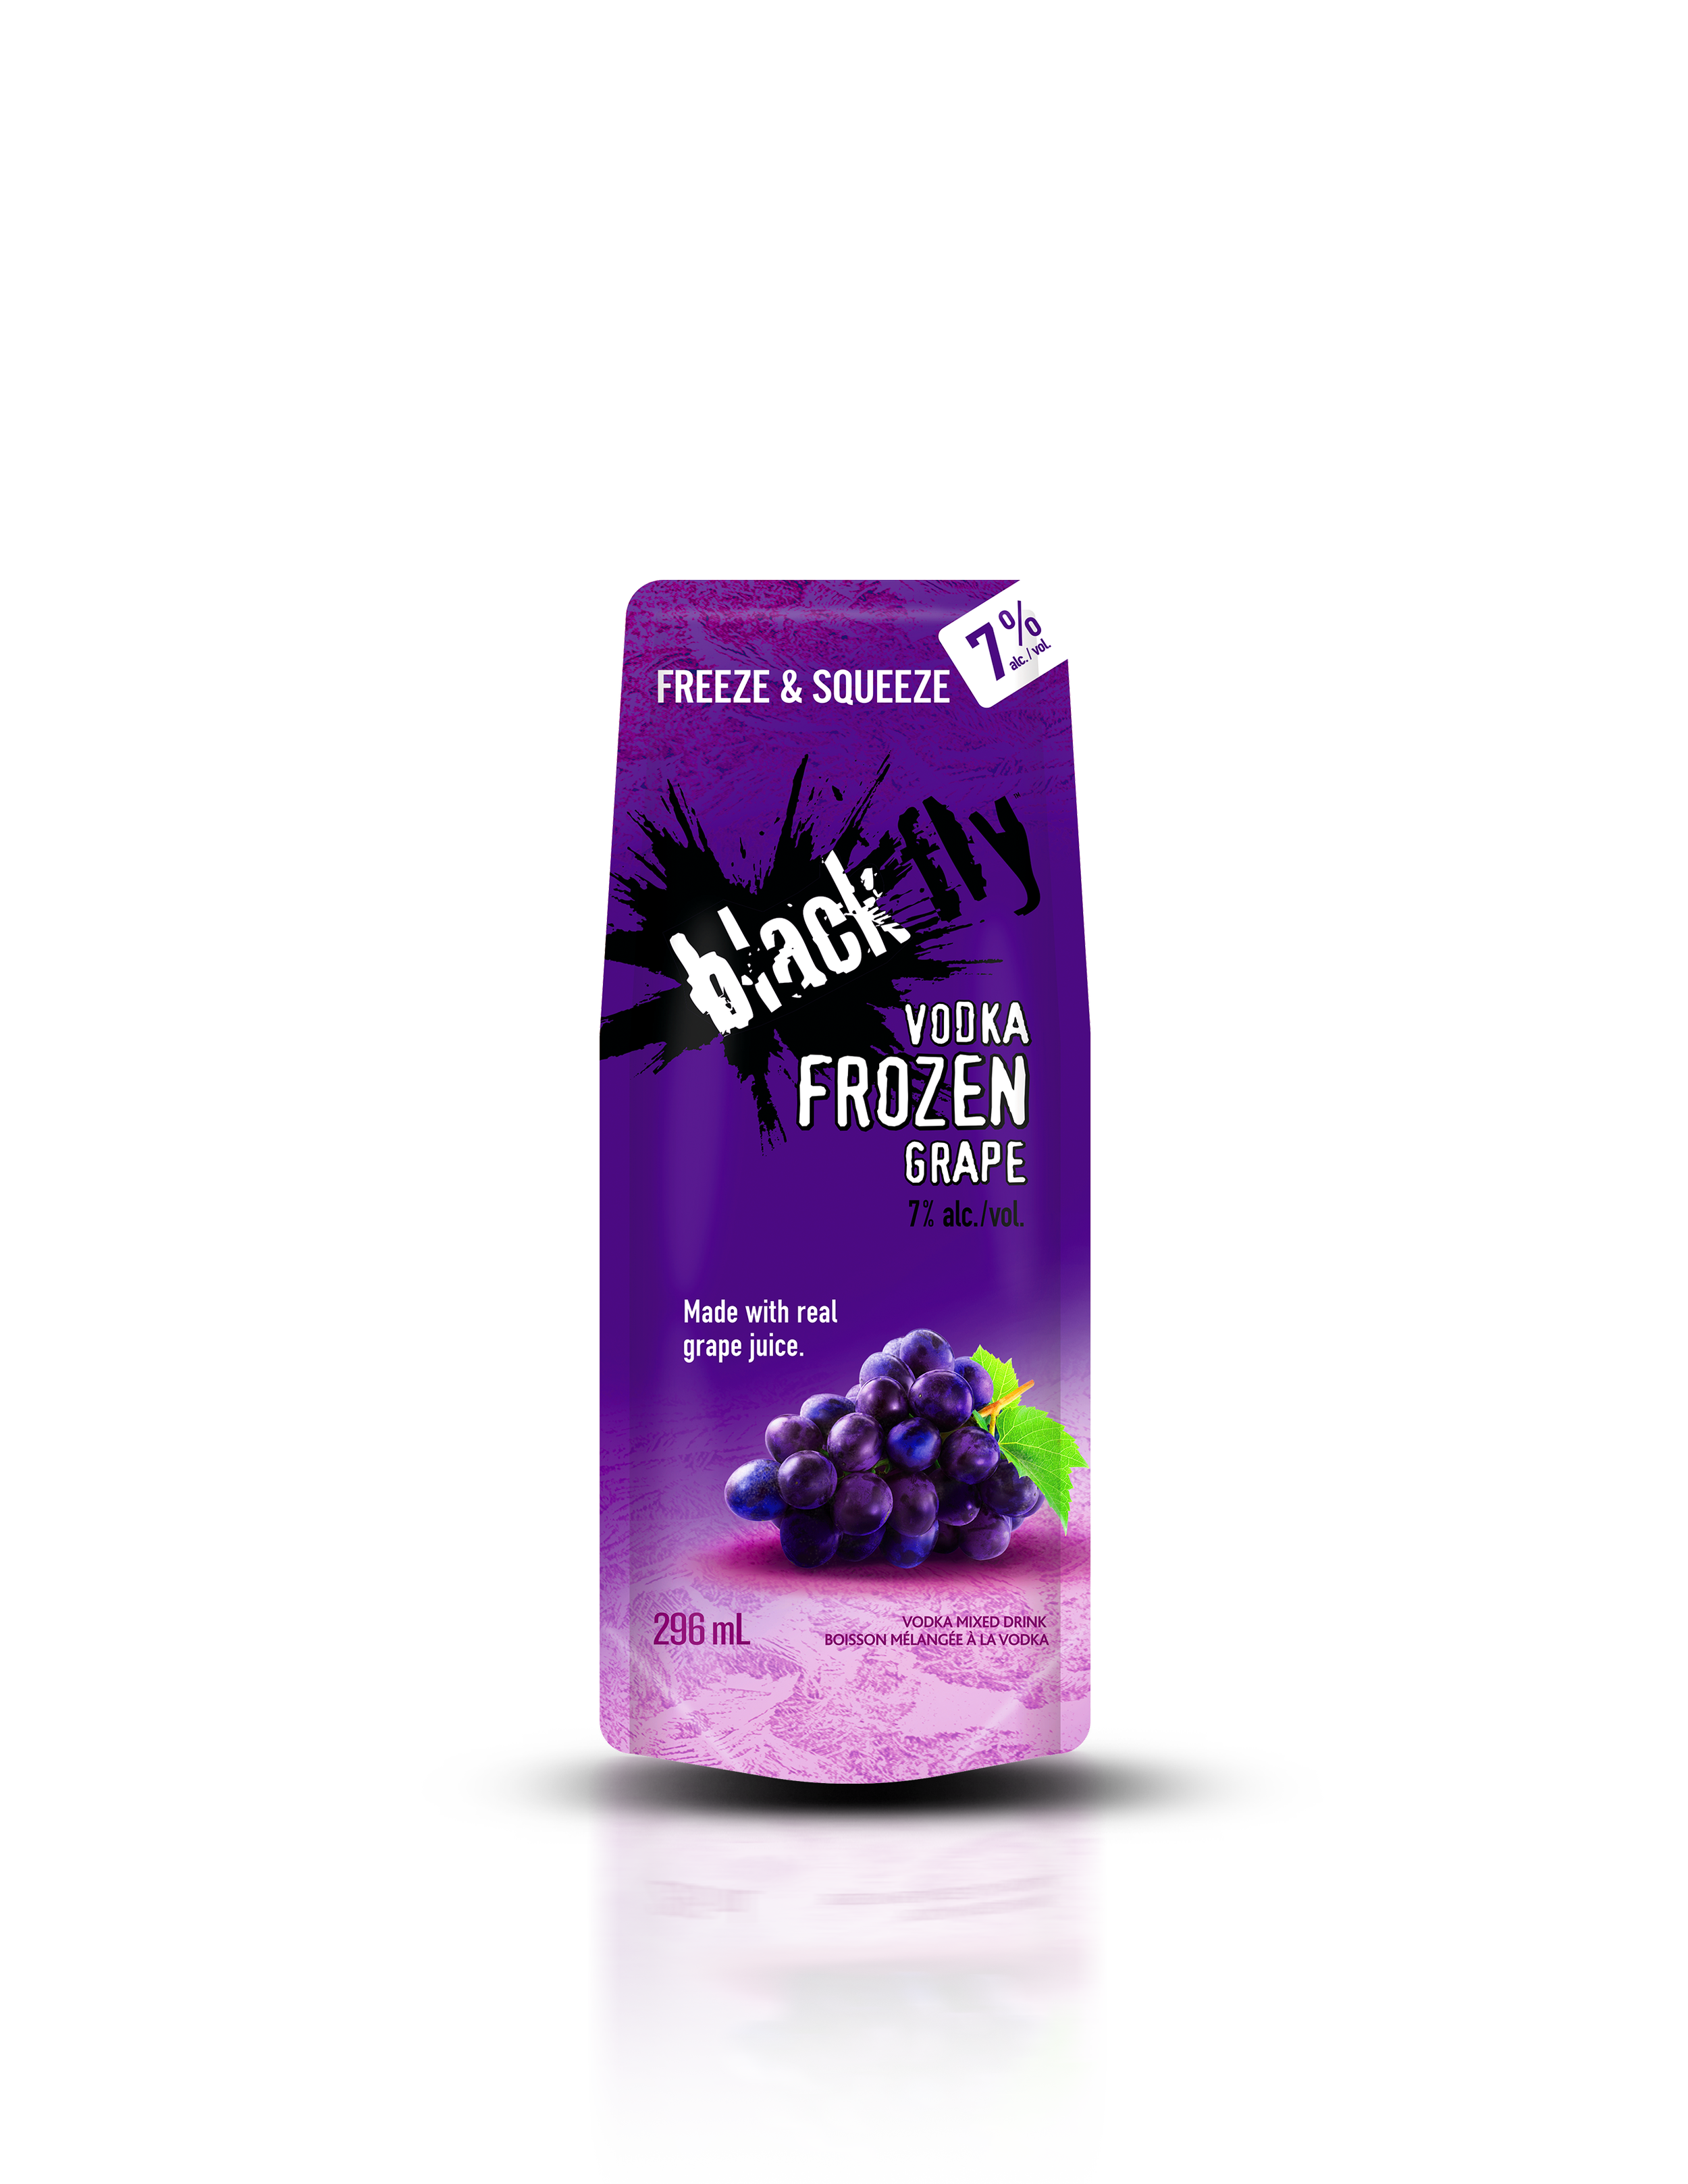 Vodka Frozen Grape_Pouch.png